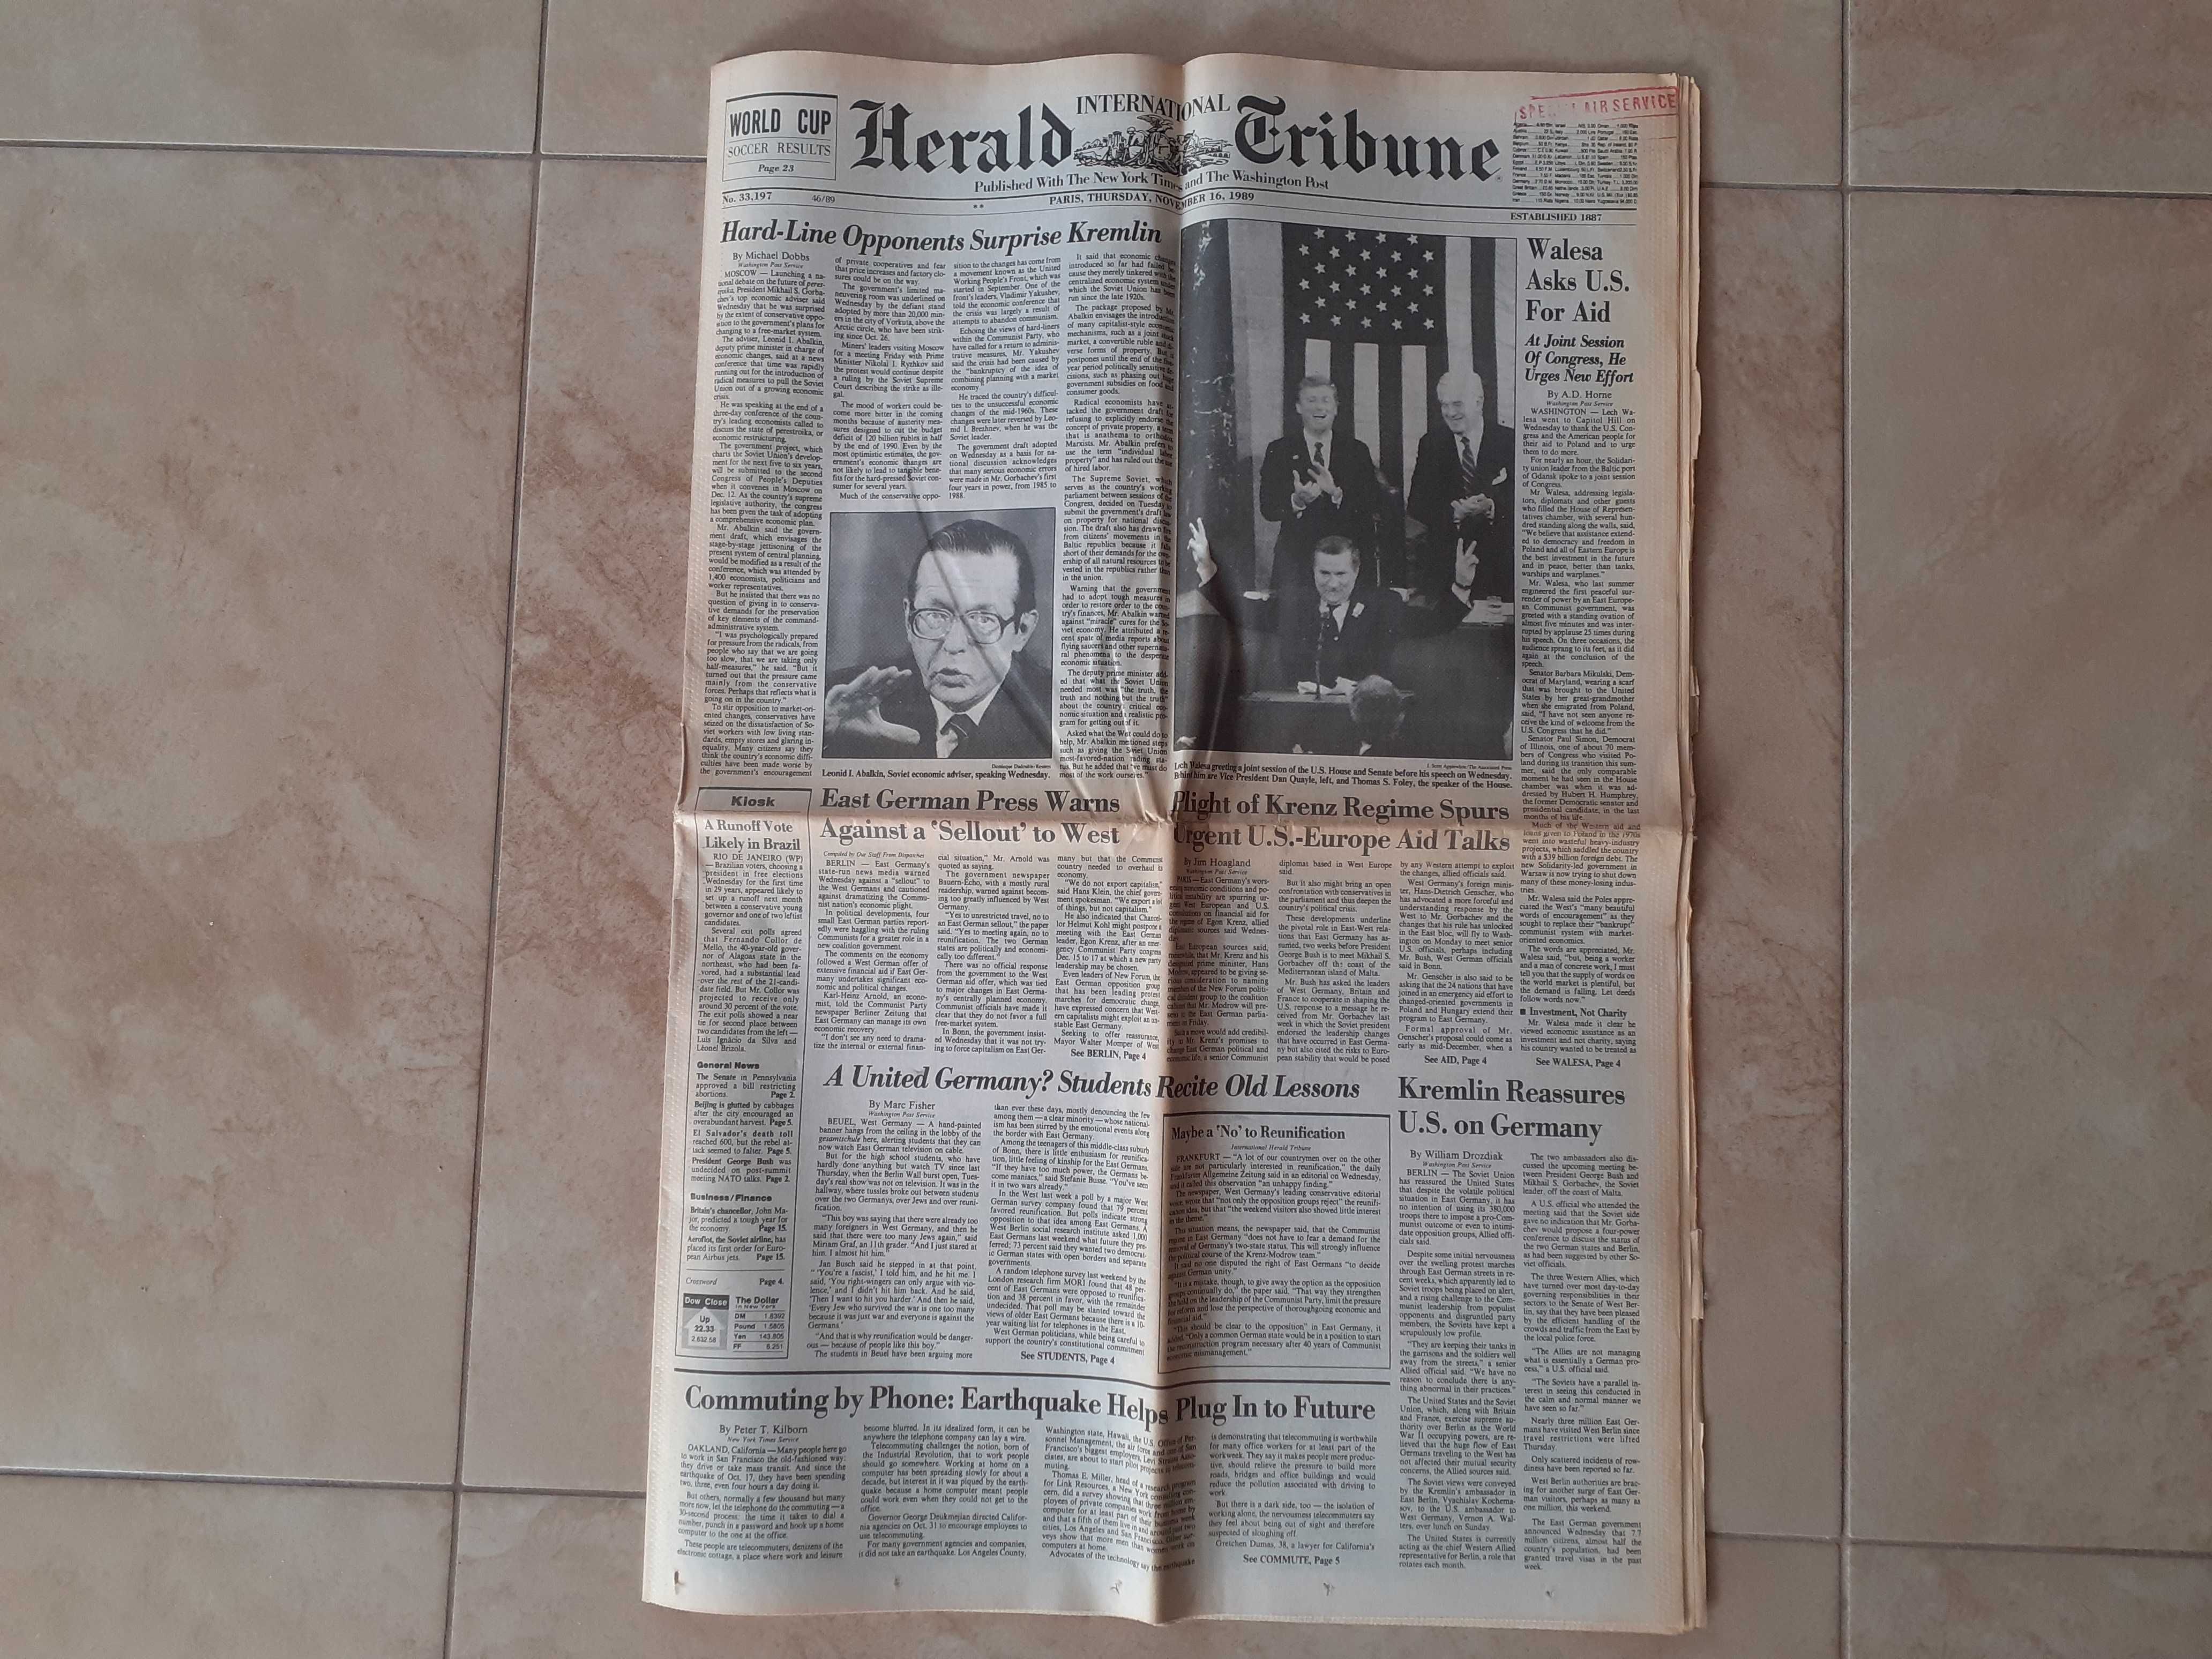 Kompletna, stara gazeta "Herald Tribune" z 16.11.1989r.